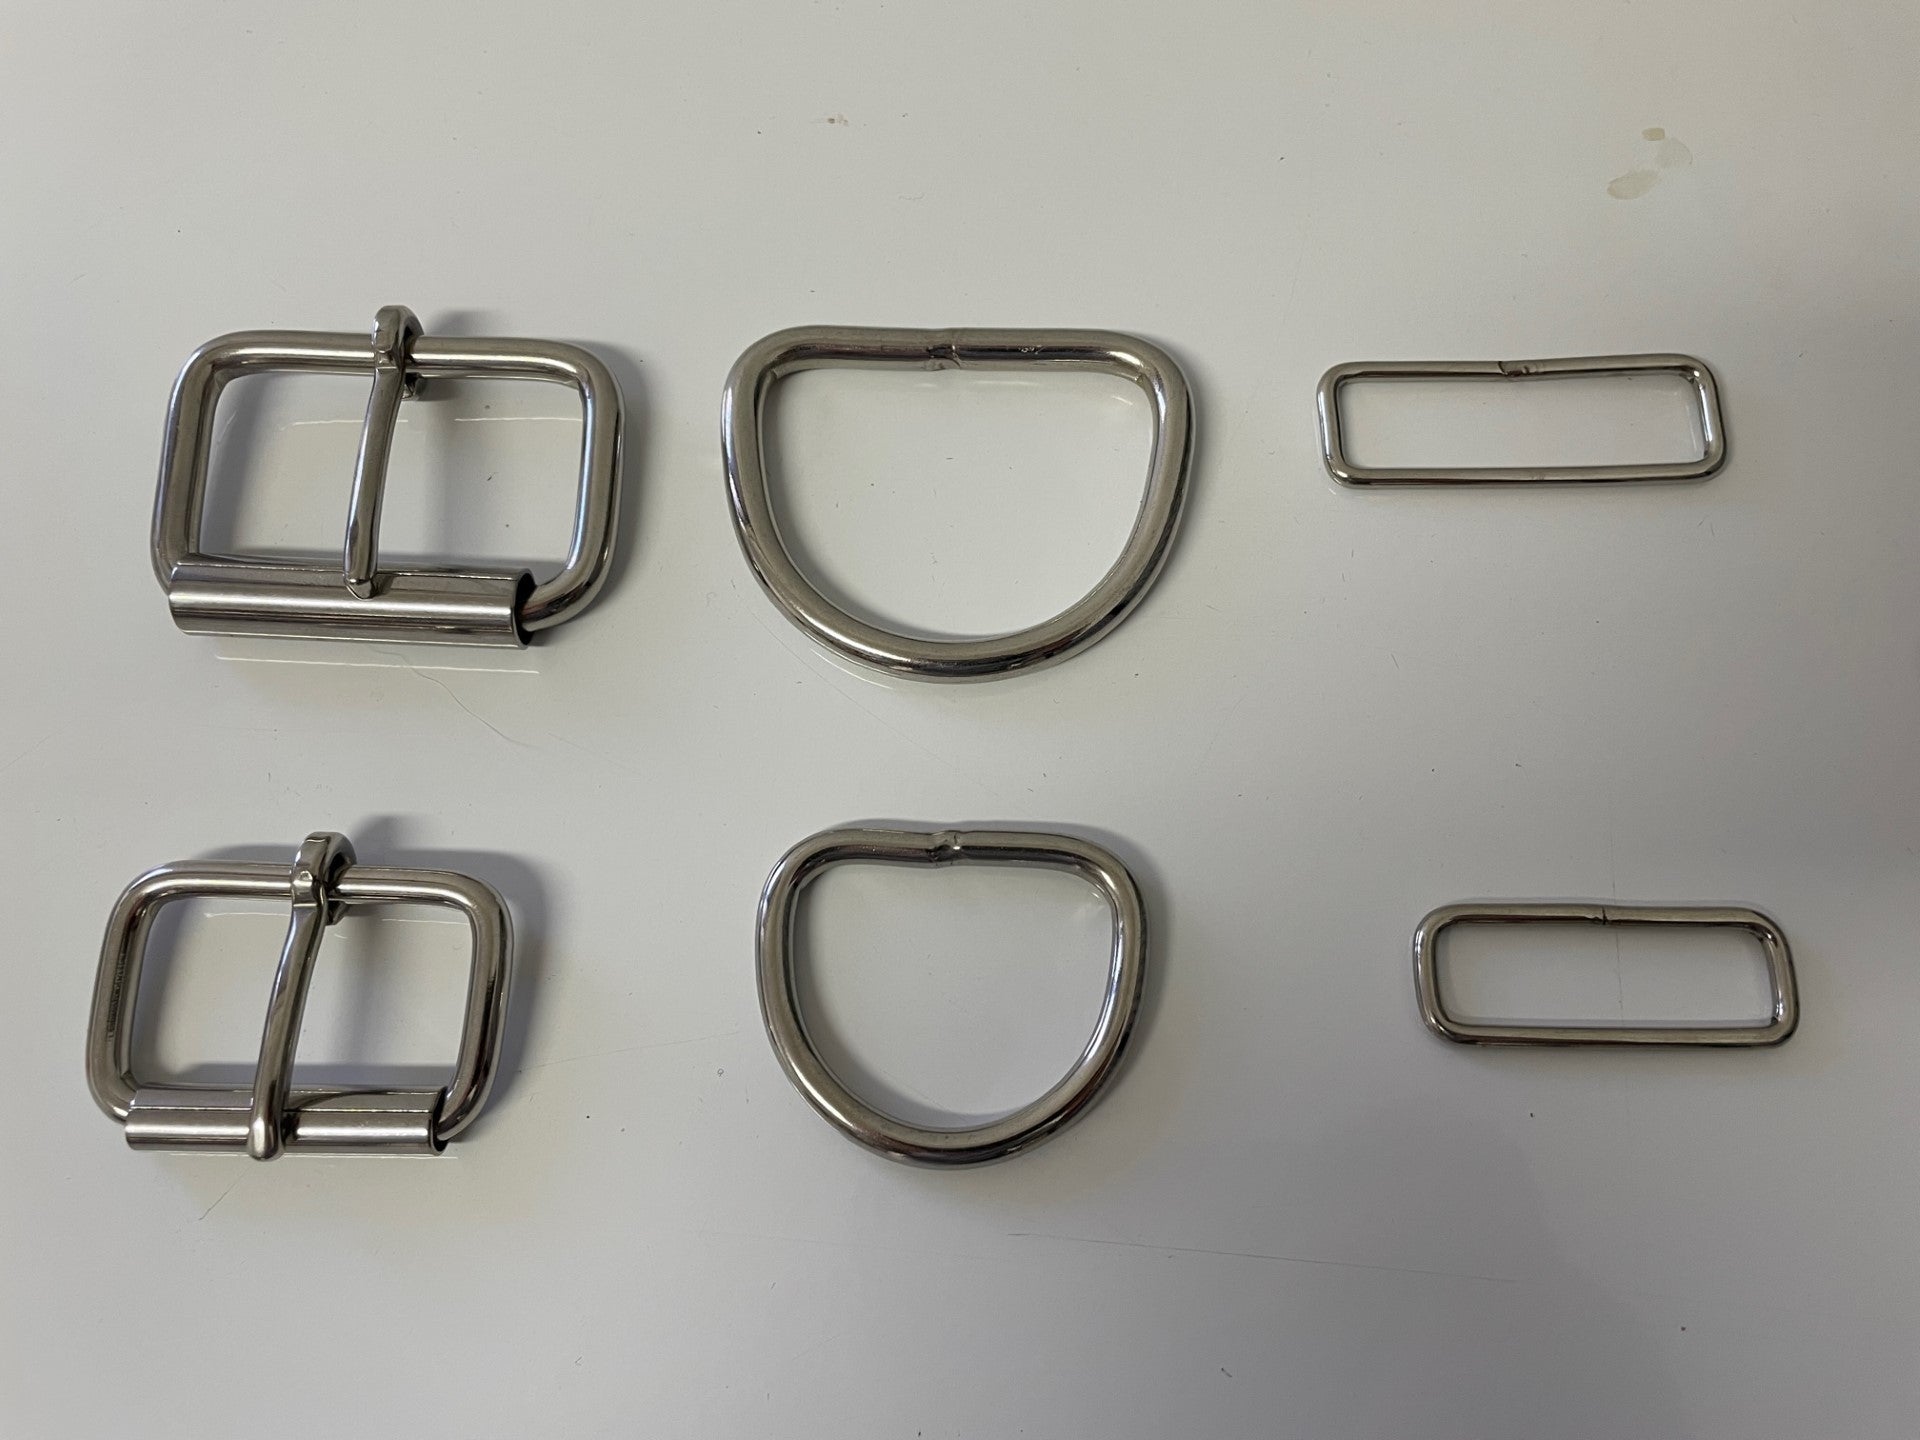 Stainless Steel Keeper/Loop - 1&1/2"